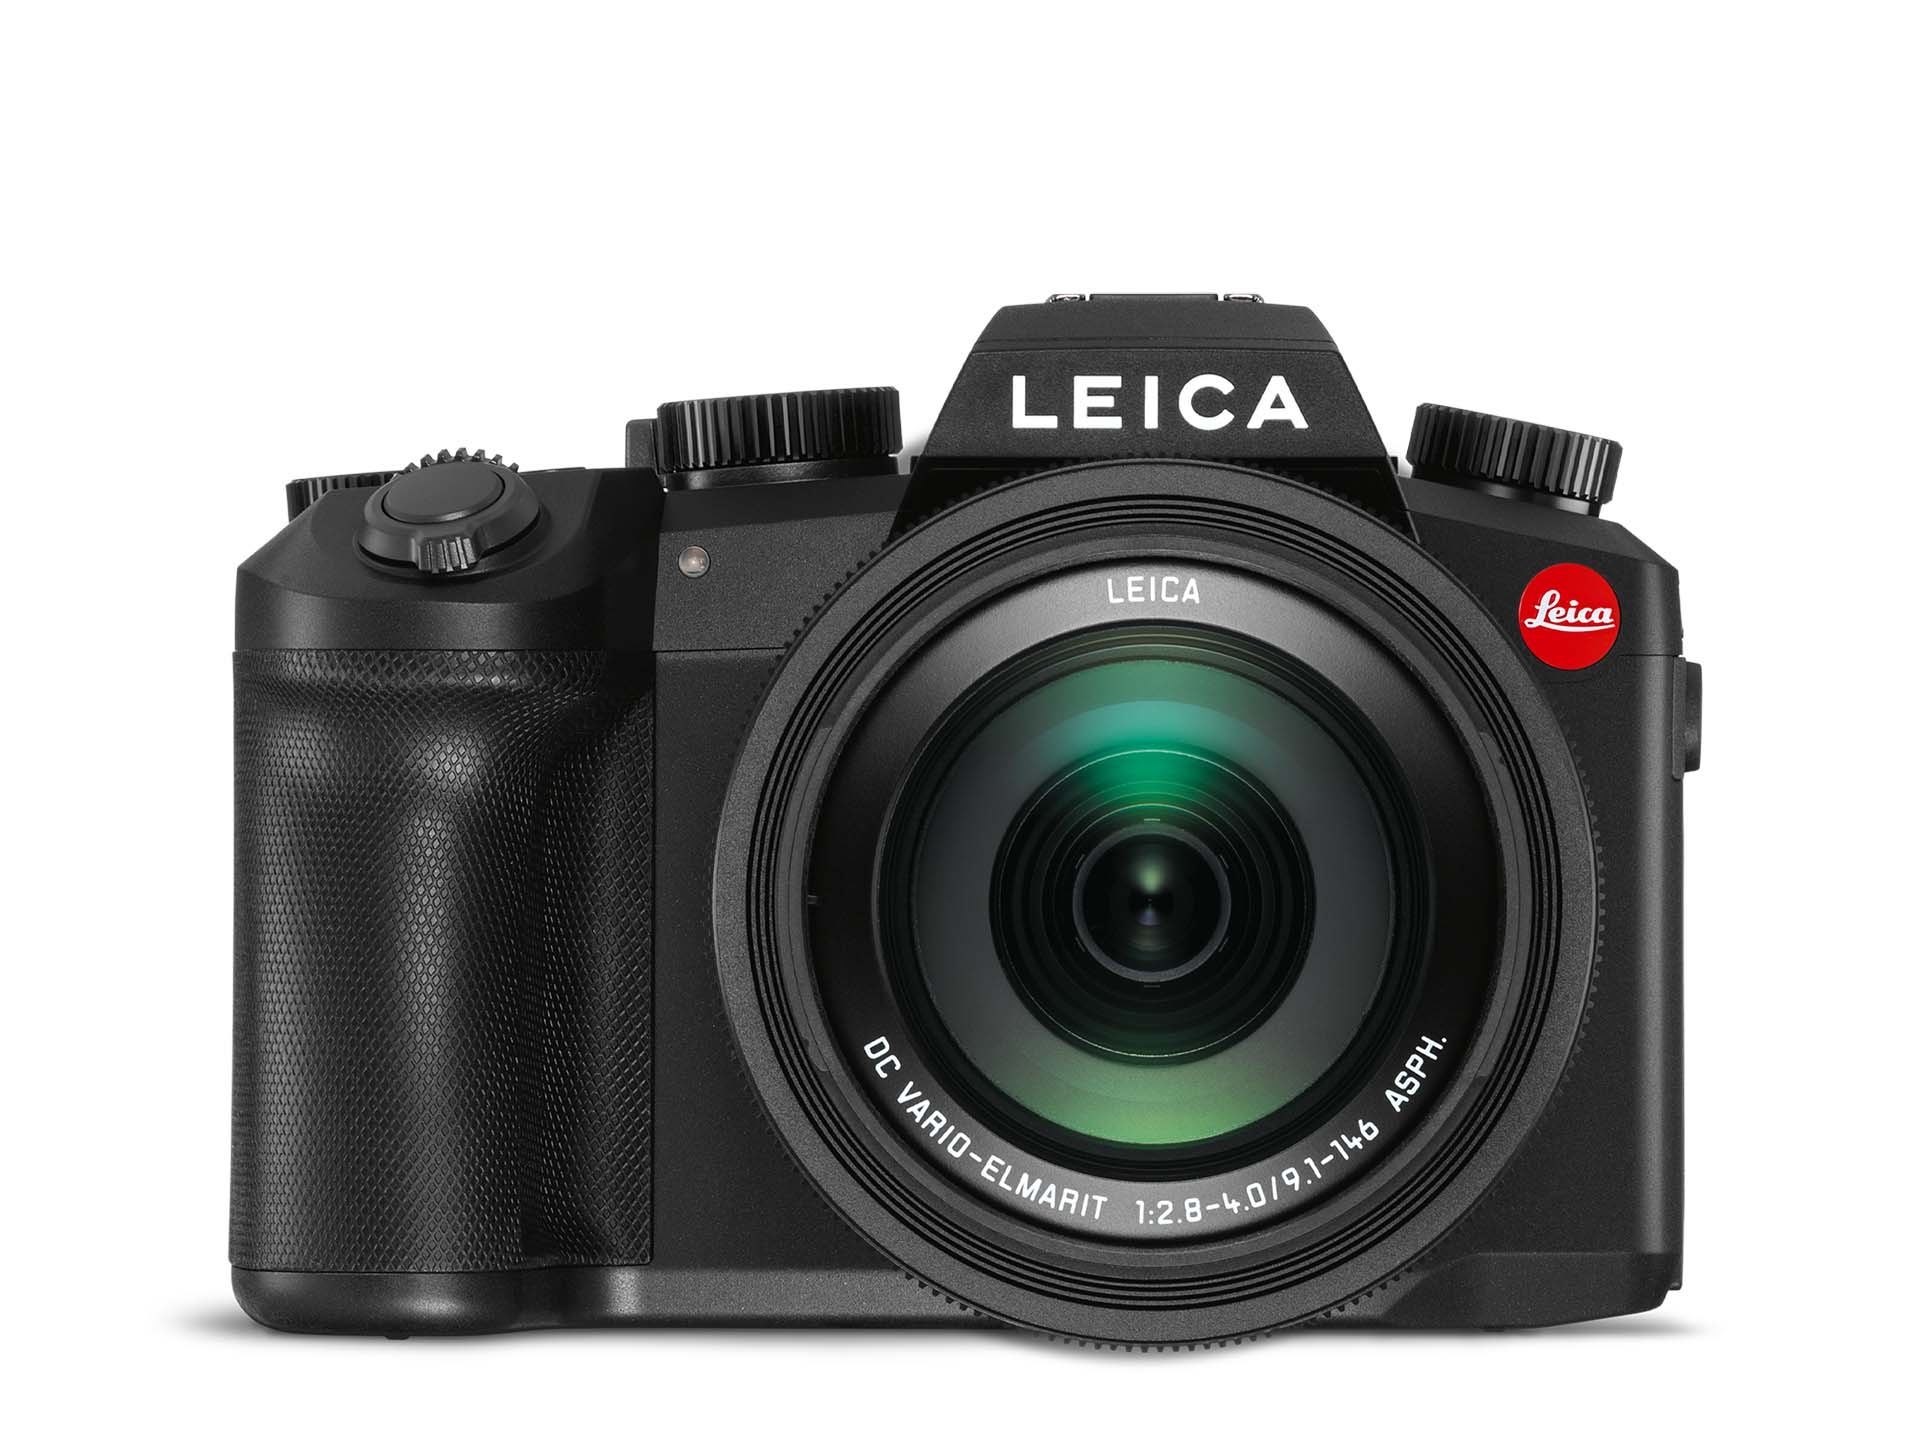 Leica Câble USB appareil photo Leica V-LUX 1 C-LUX 2 V-LUX 40 D-LUX 5 C-LUX 3 